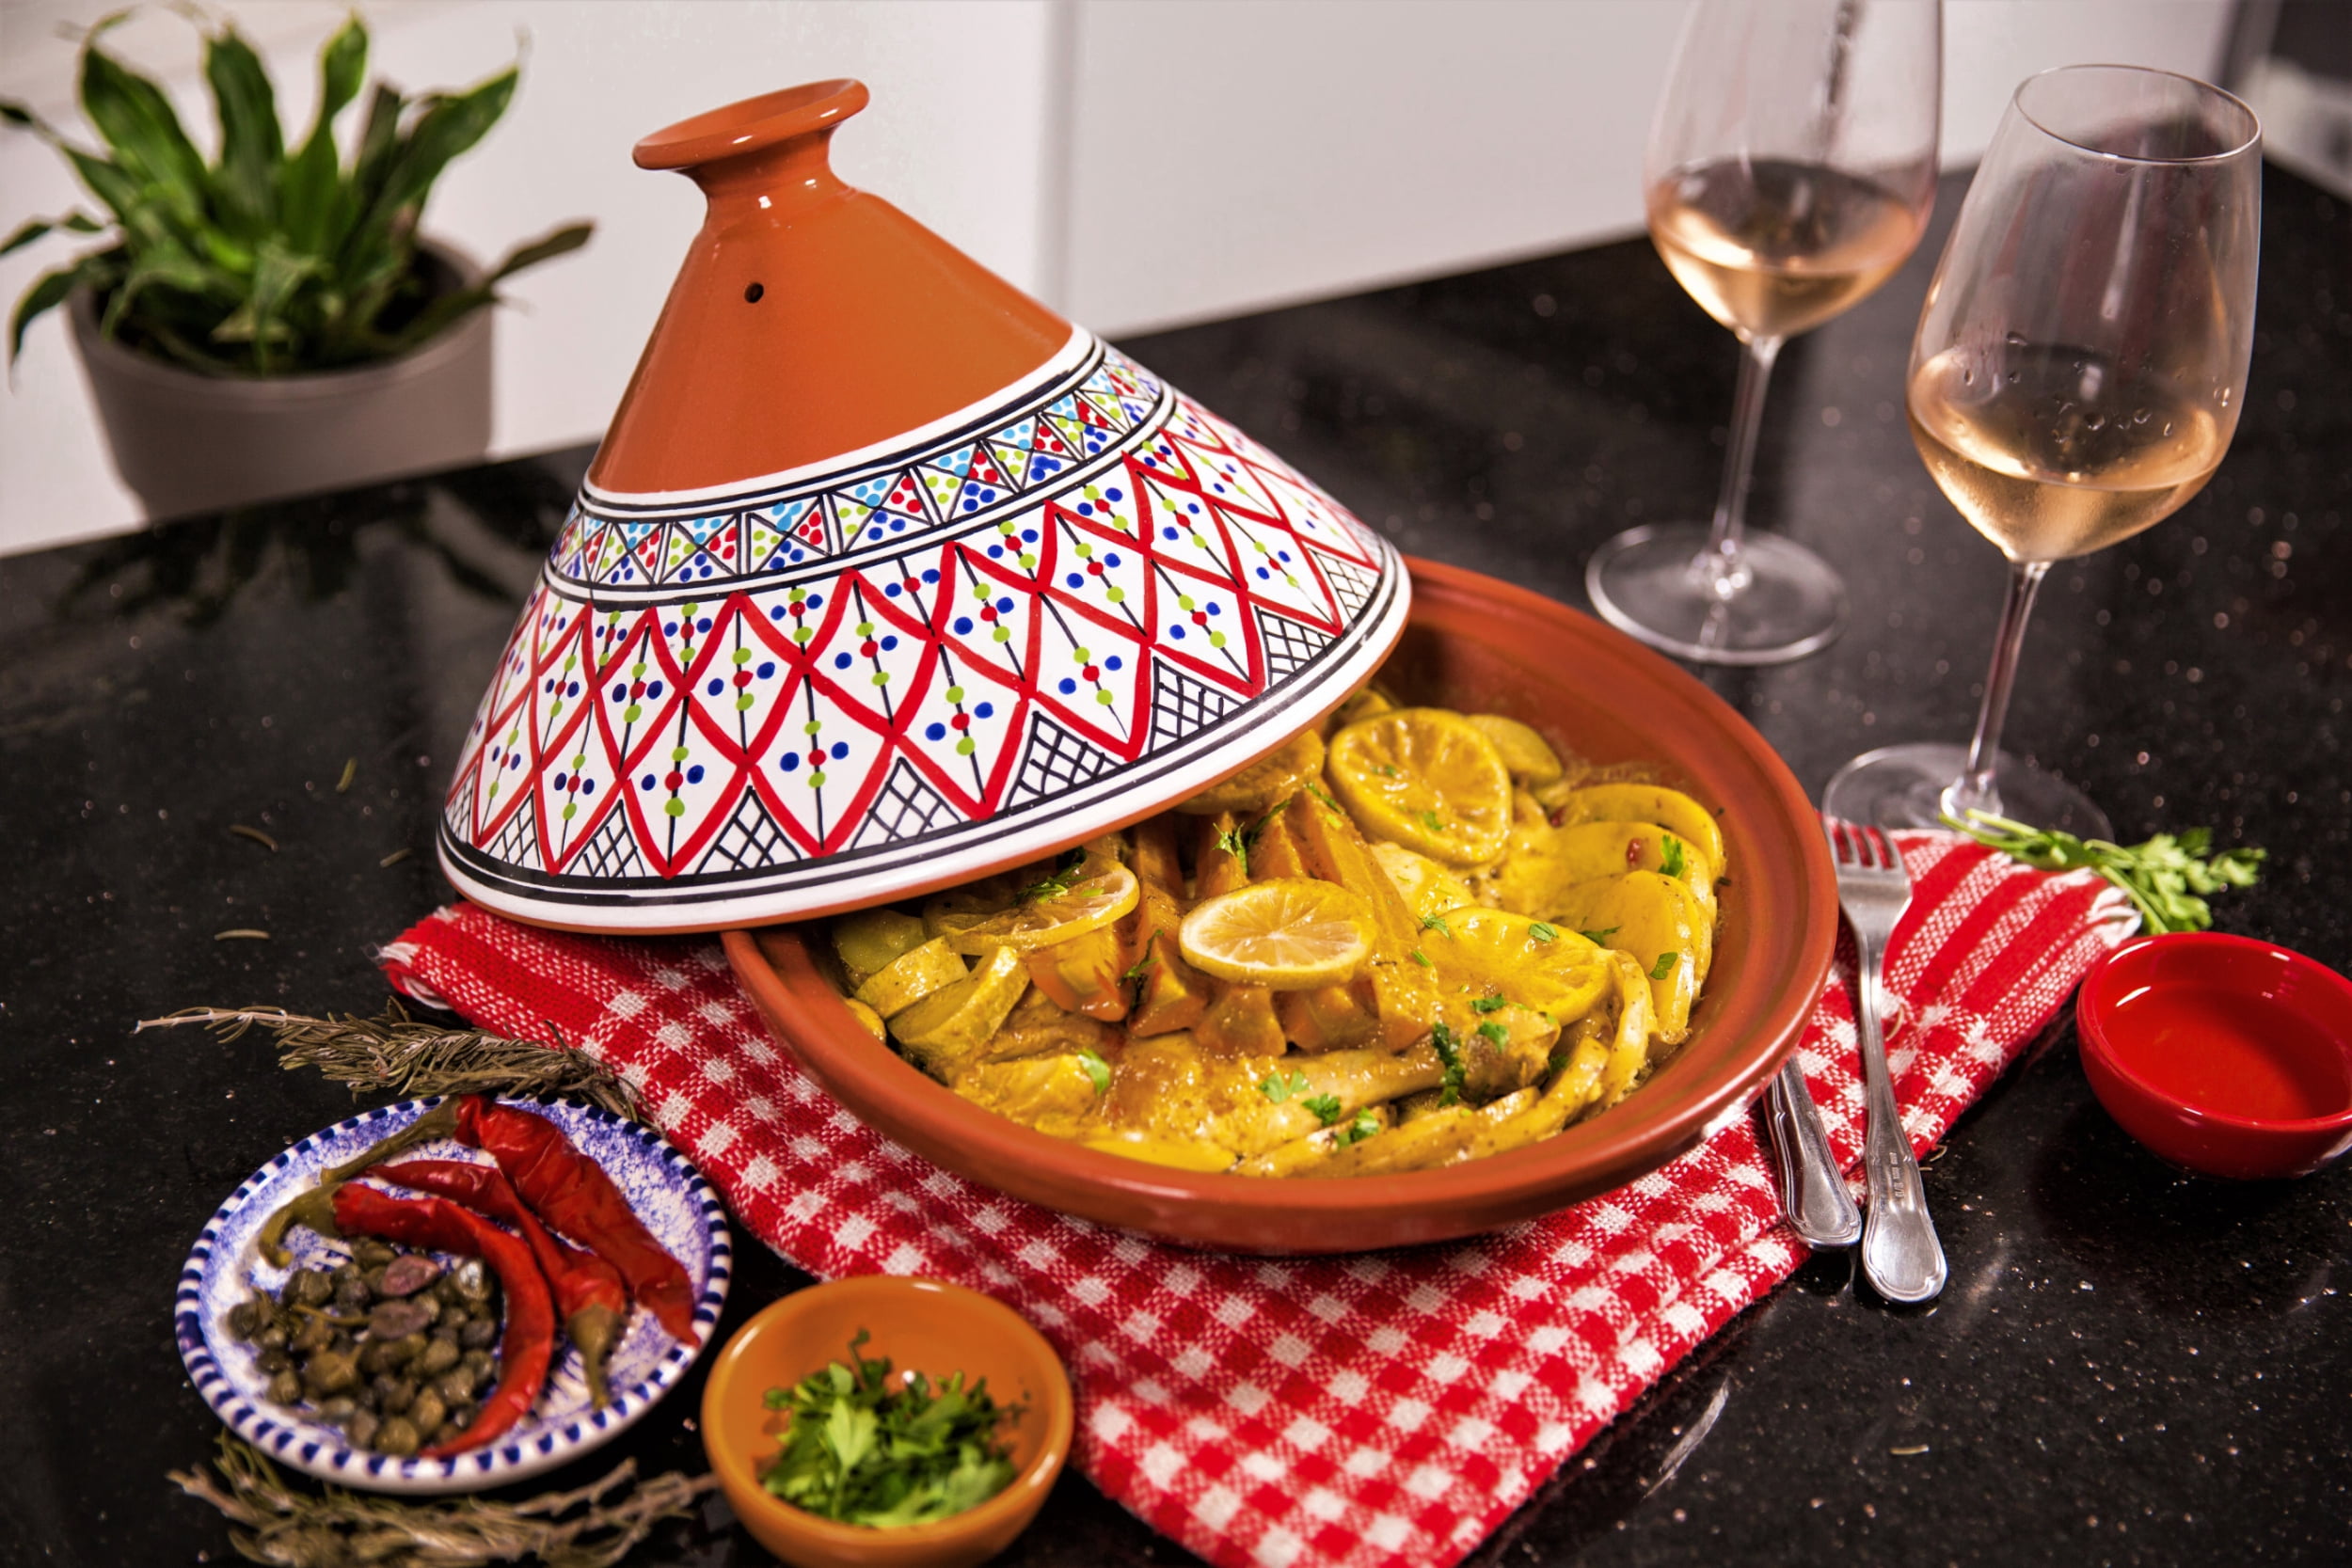 Serving Tagine Handmade Ceramic Moroccan Tajine Dish Exquisite 6 inches Diameter 